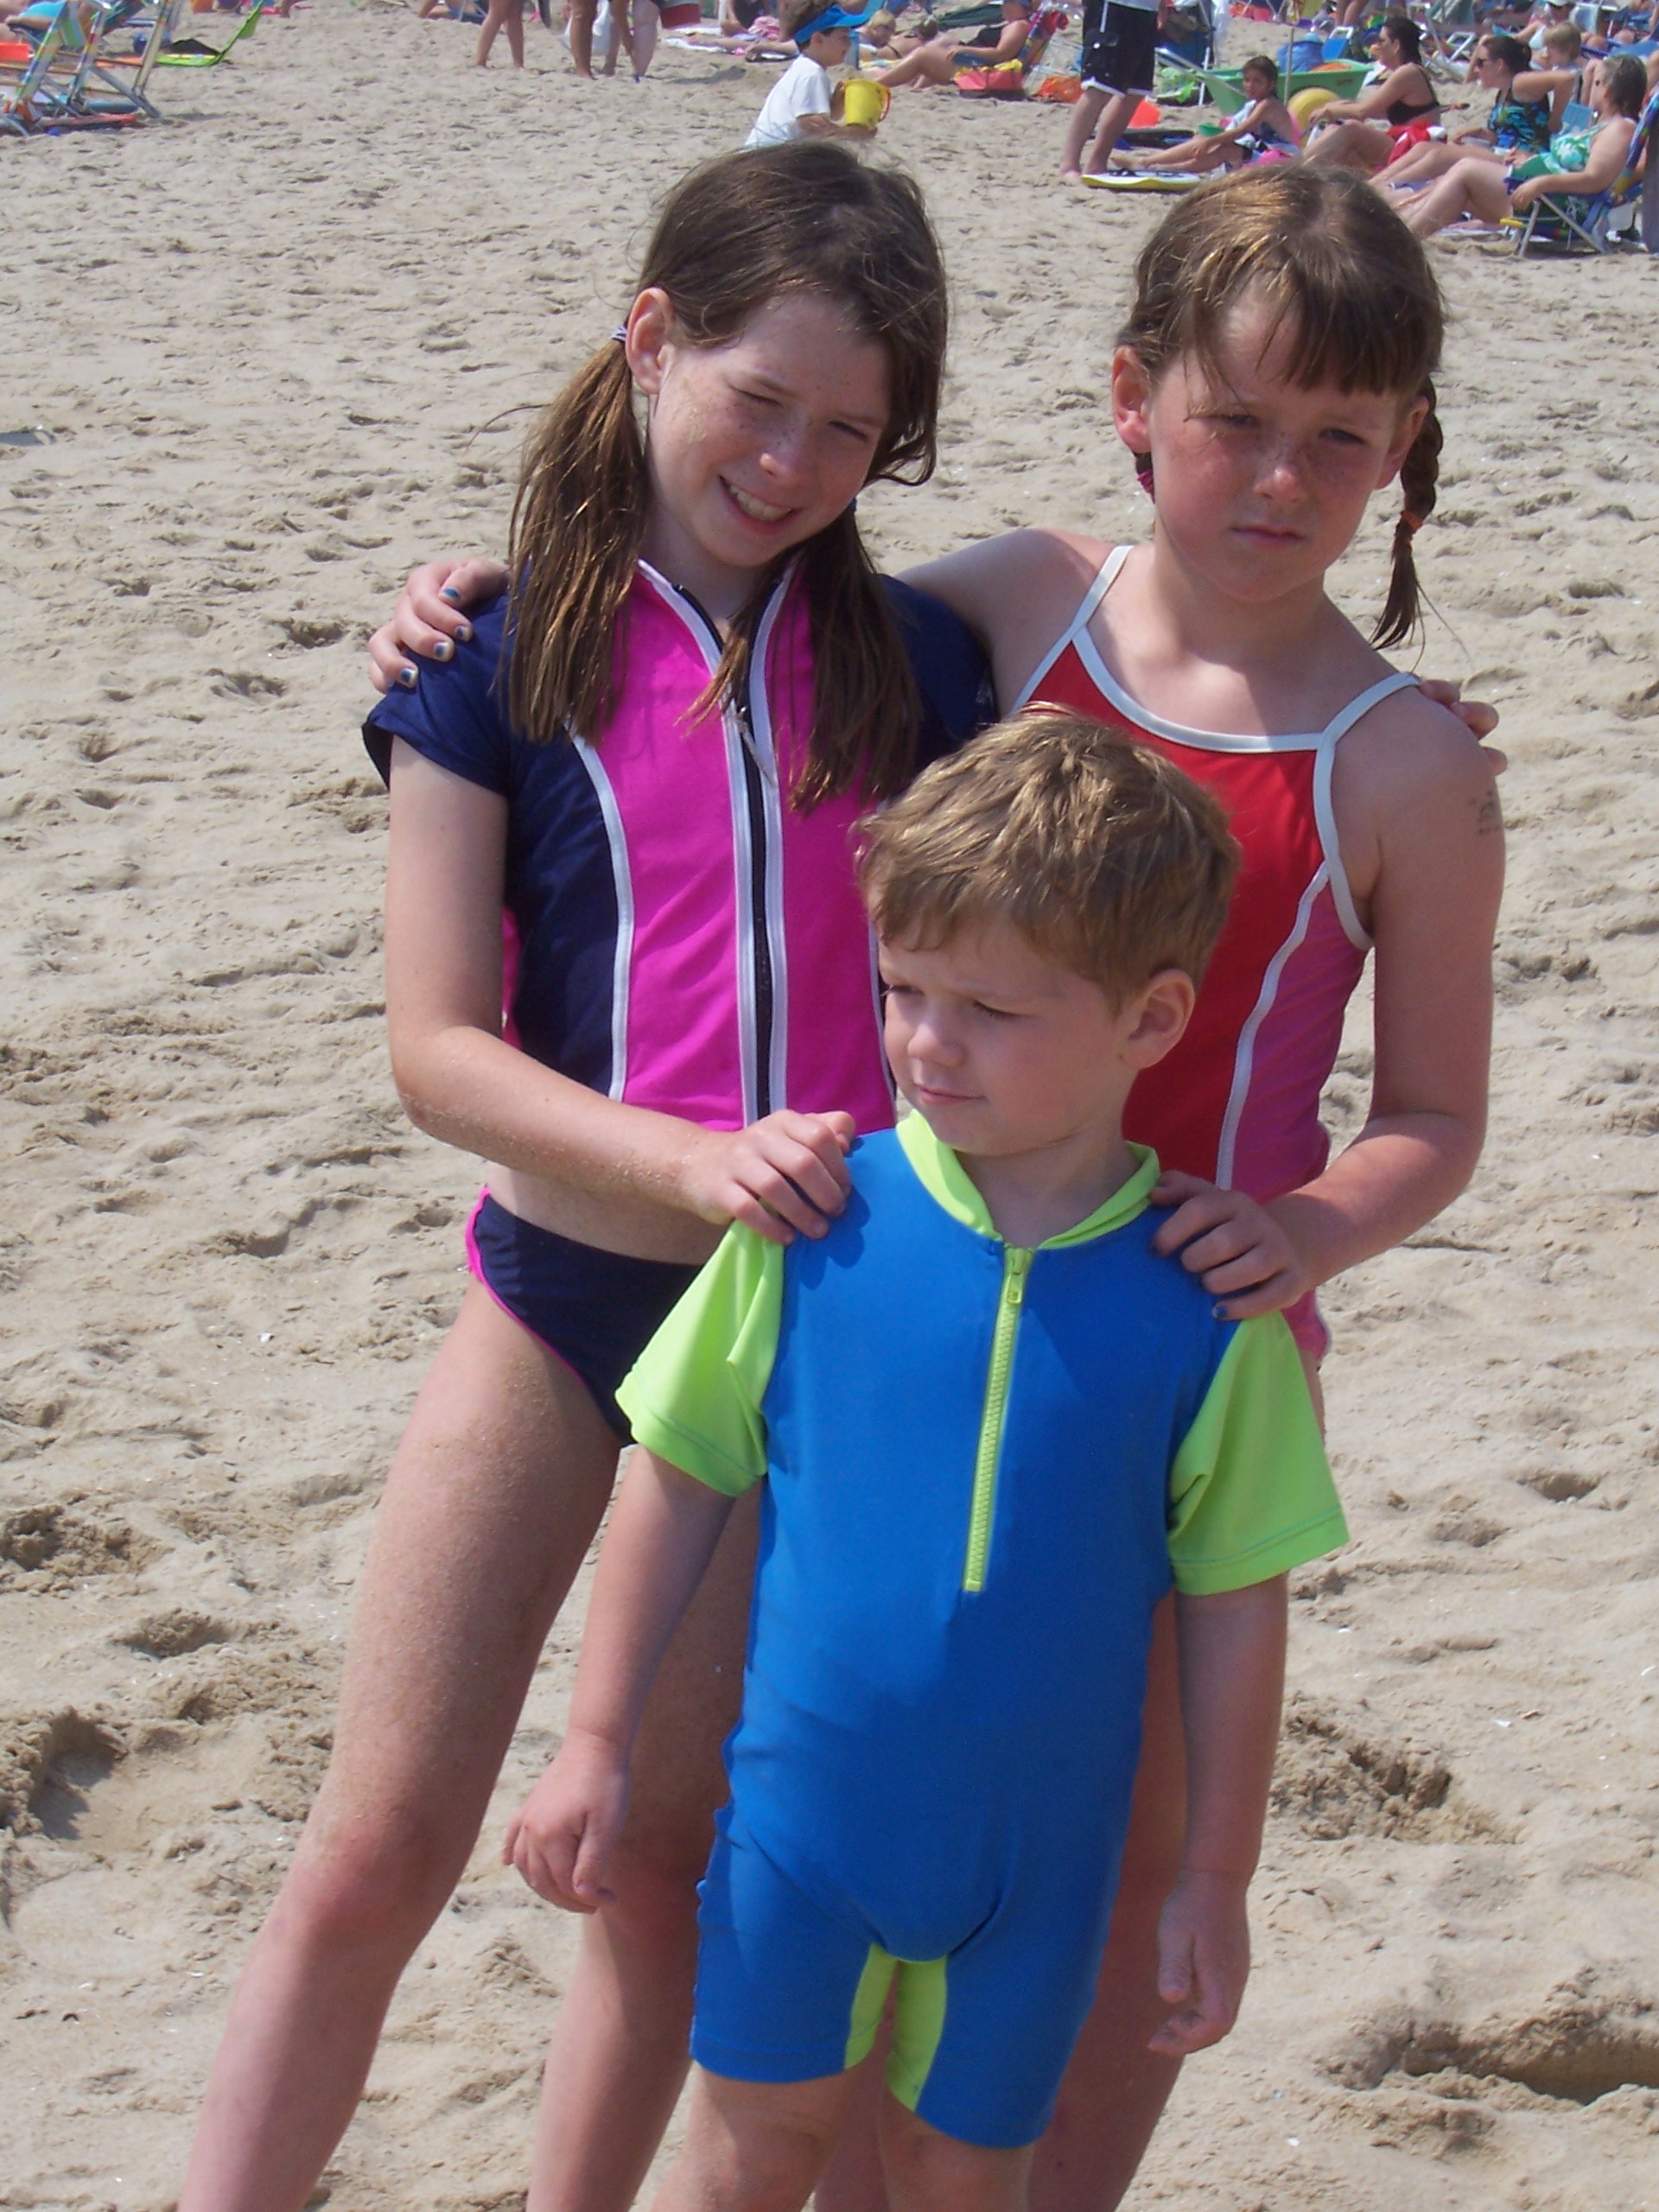 Kids on a beach wearing swimsuits and rashguard shirts